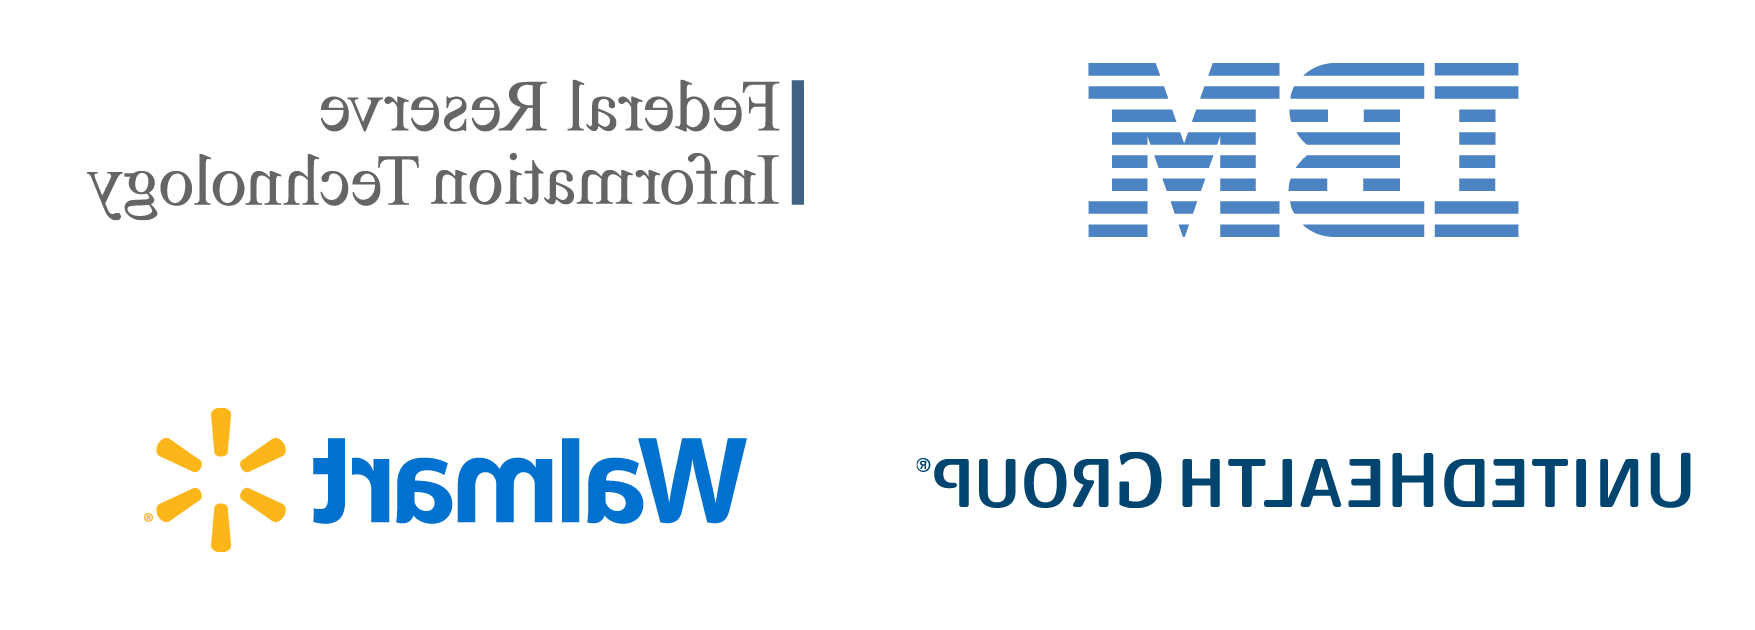 信息系统职业目的地的标志:IBM, 美联储信息技术, 联合健康集团, 和沃尔玛